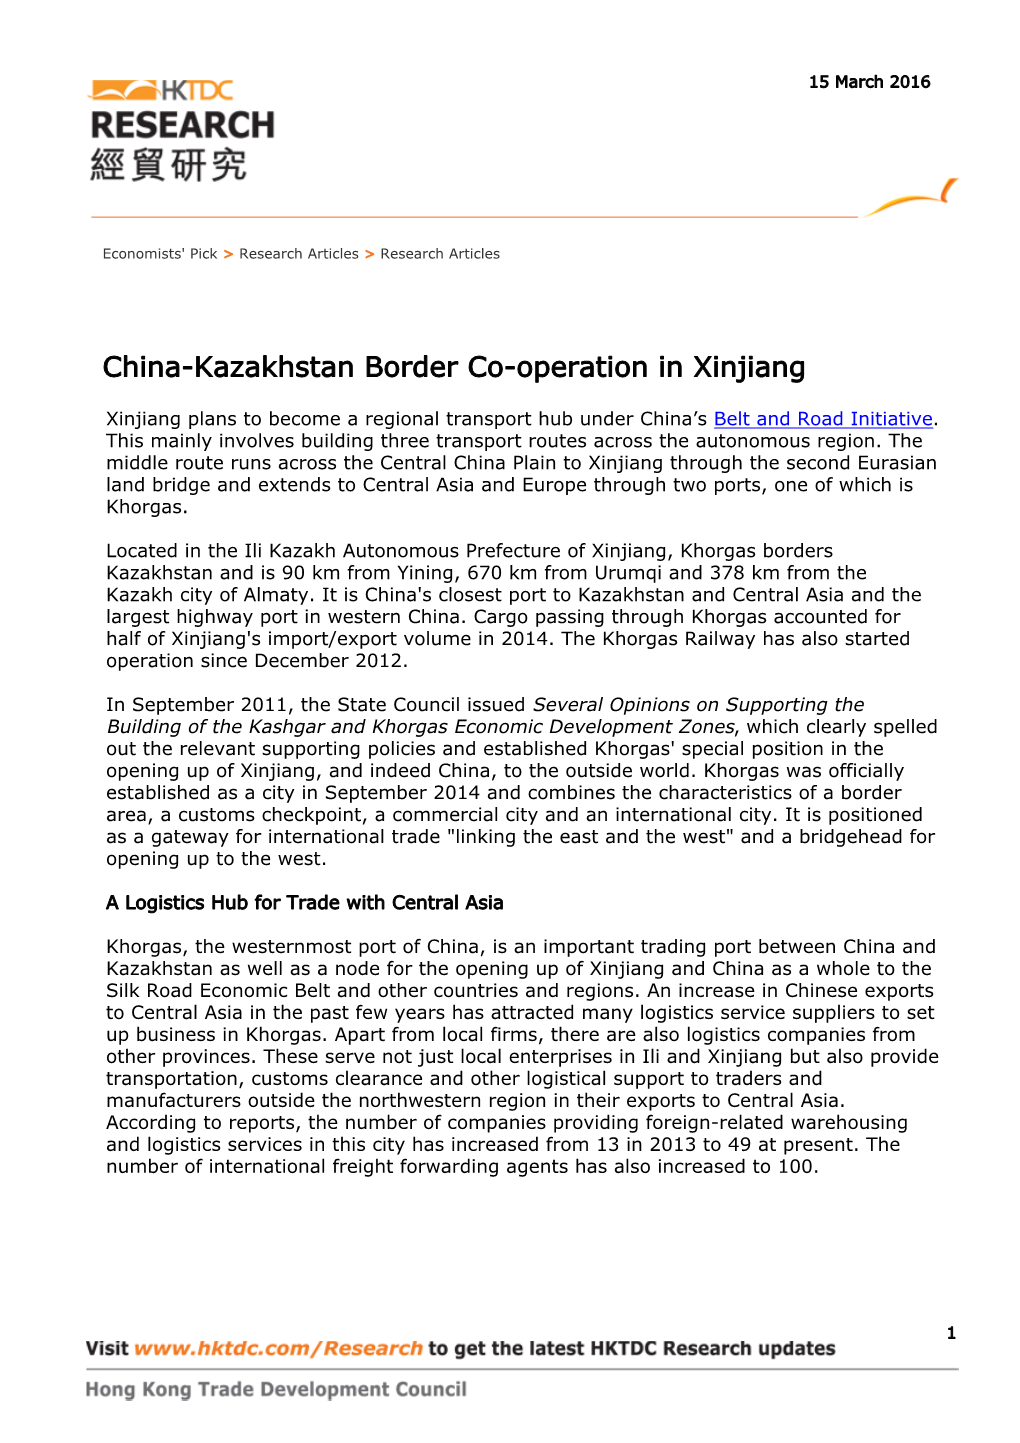 China-Kazakhstan Border Co-Operation in Xinjiang